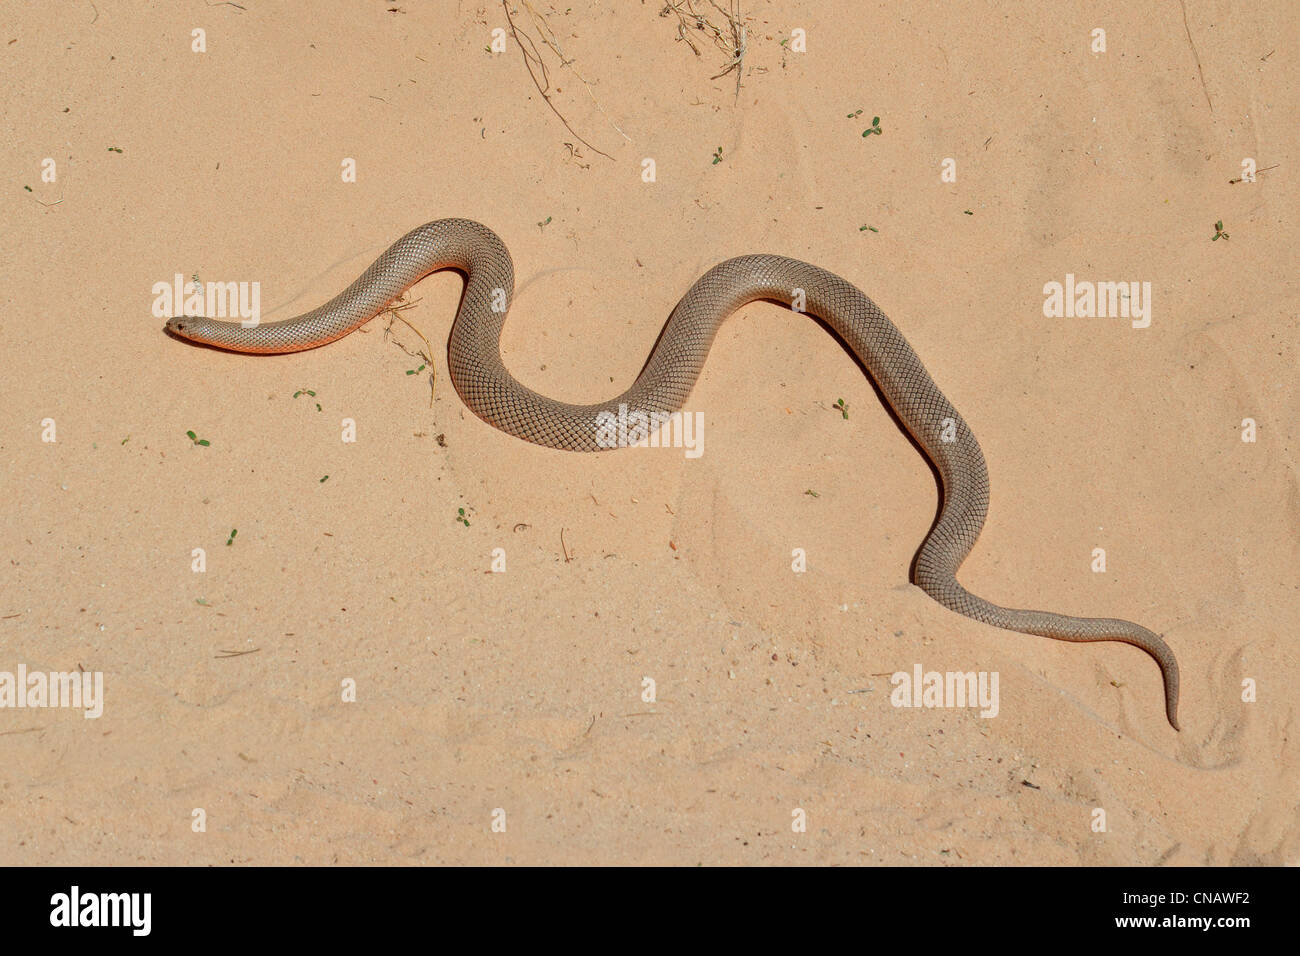 Un serpent taupe sur le sable (Pseudaspis cana), l'Afrique du Sud Banque D'Images